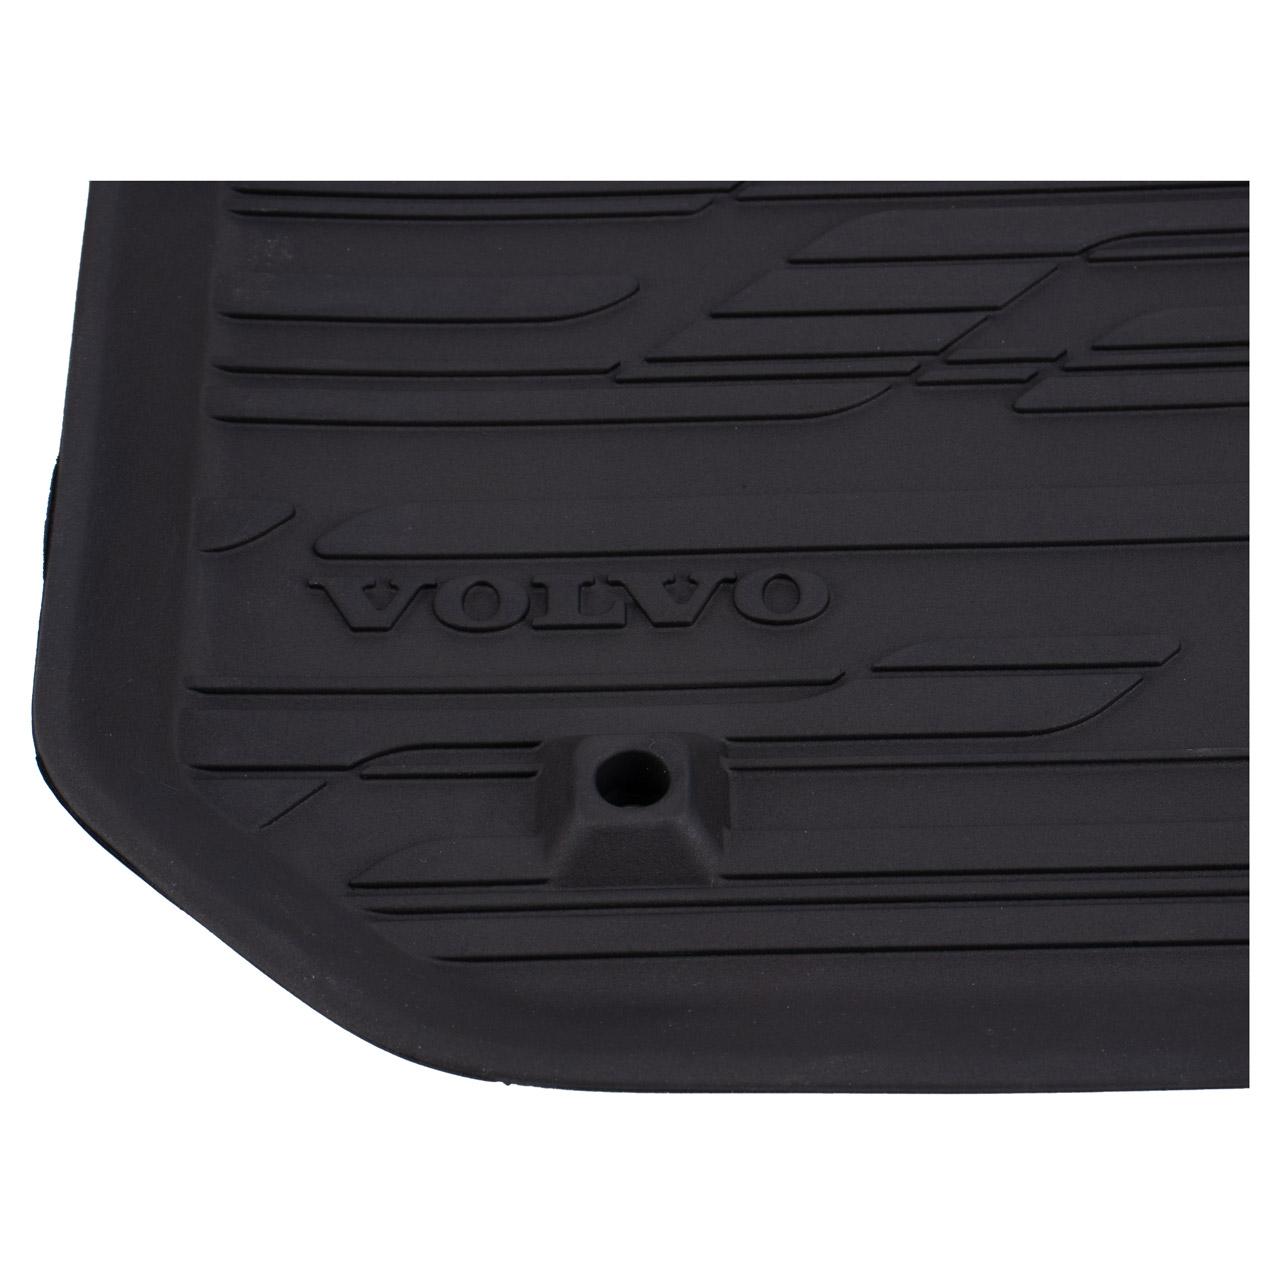 V60 | myparto 1 S60 2 ORIGINAL 4-teilig Volvo 2011-2018 39828878 Satz Fußmatten Gummimatten